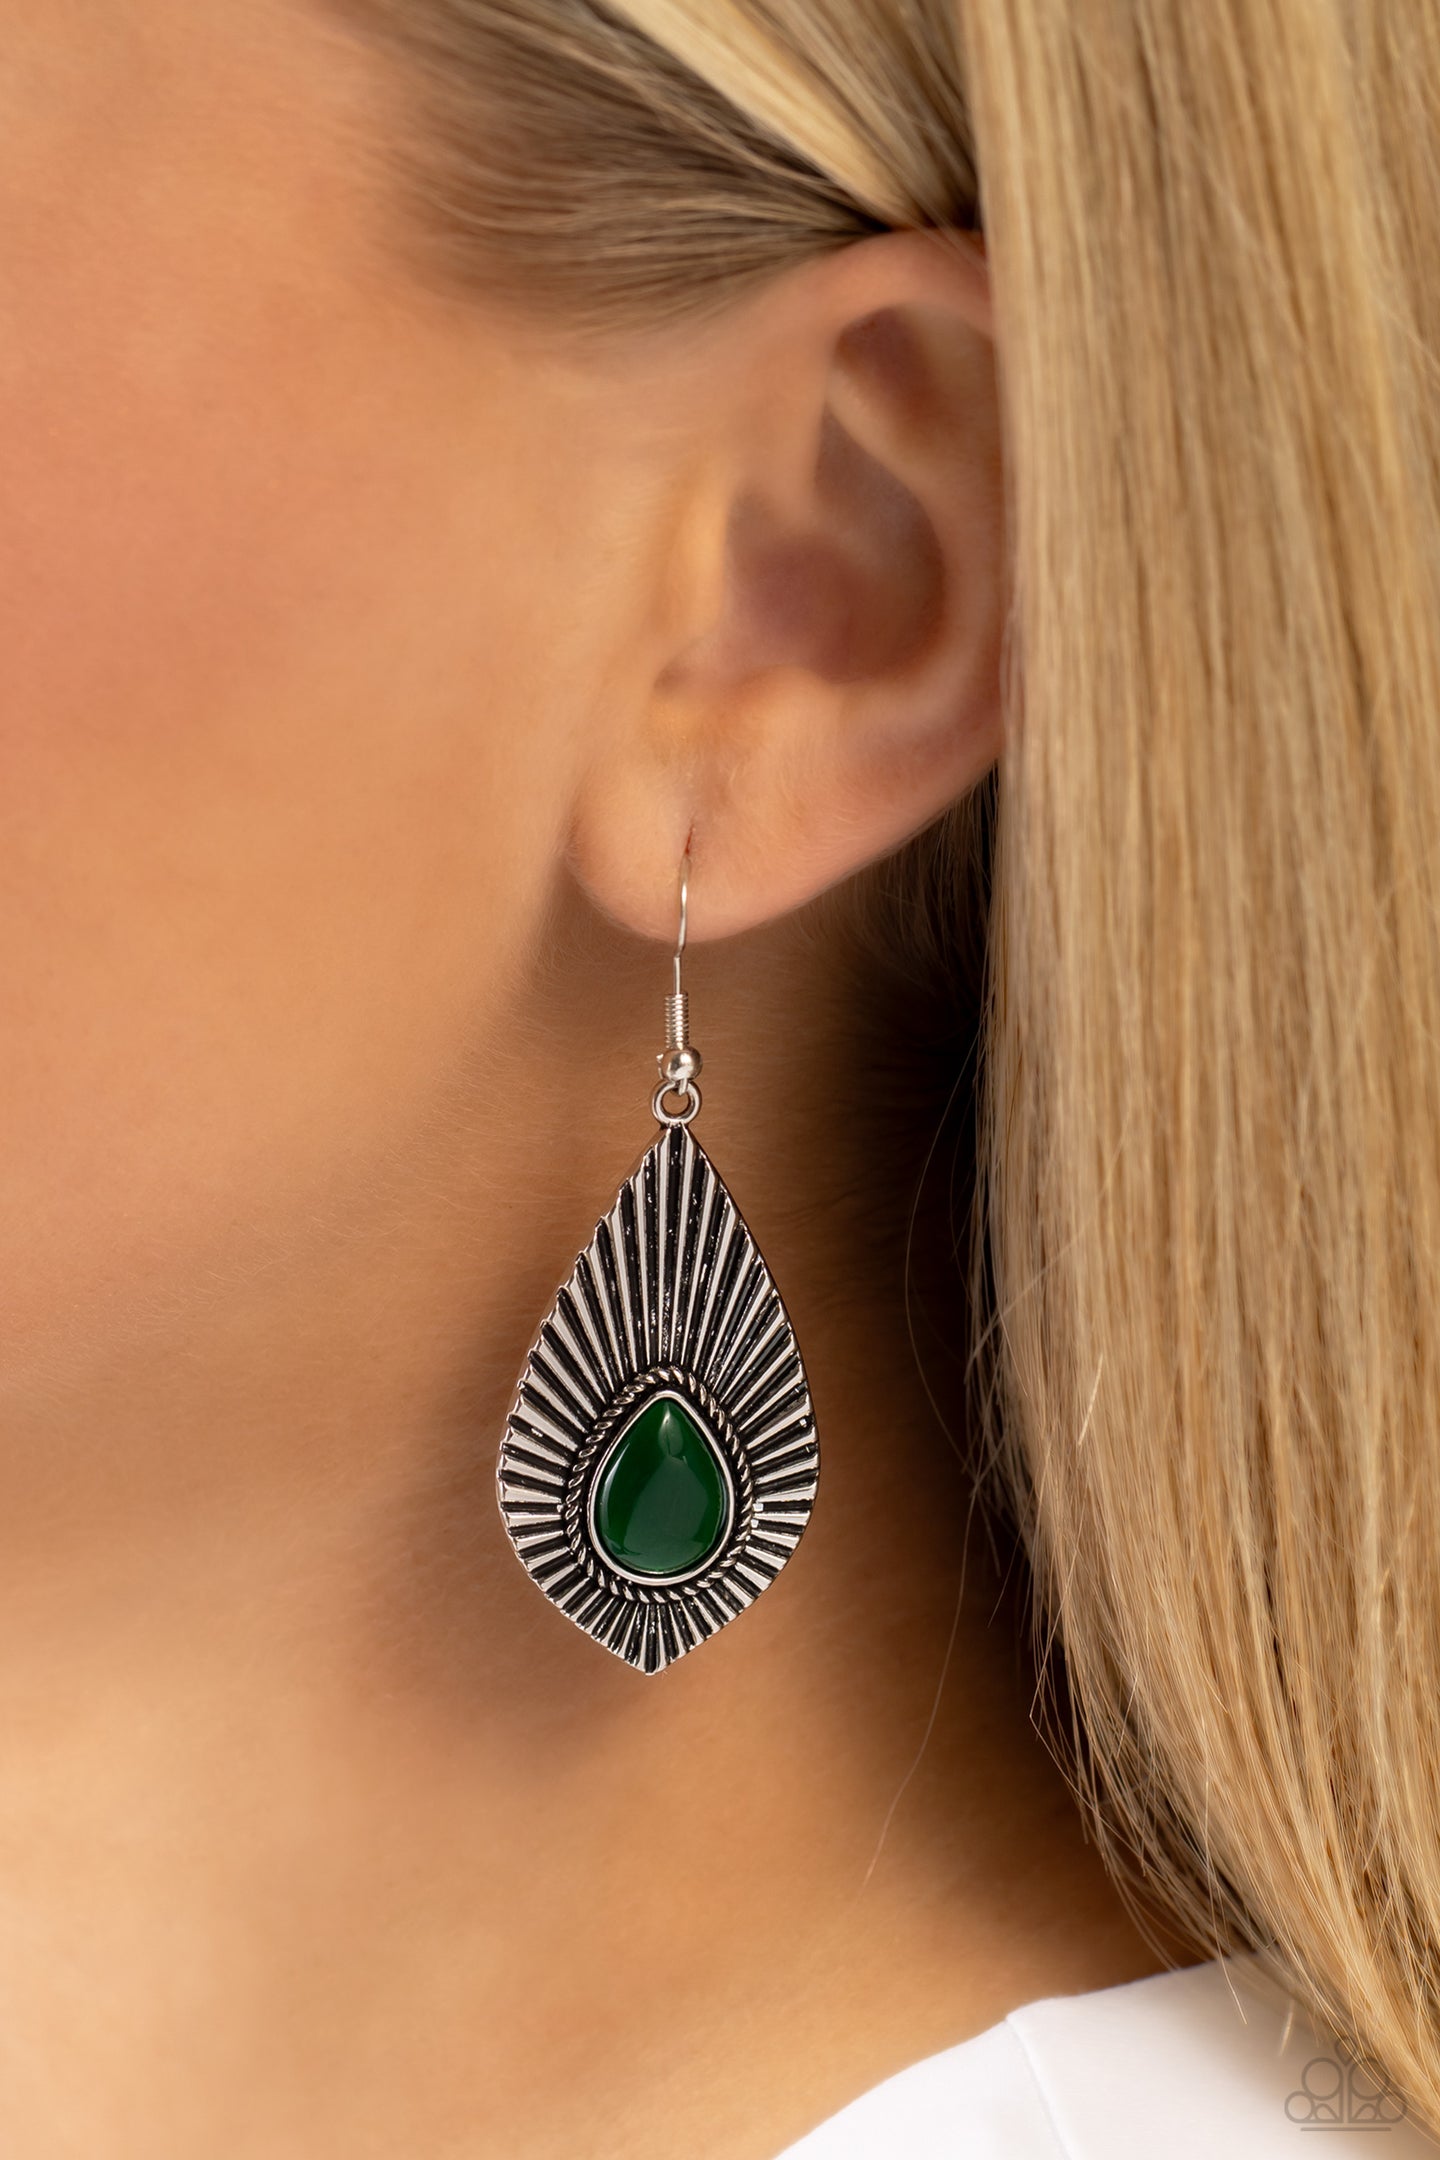 SOUL-ar Flare - Green earrings